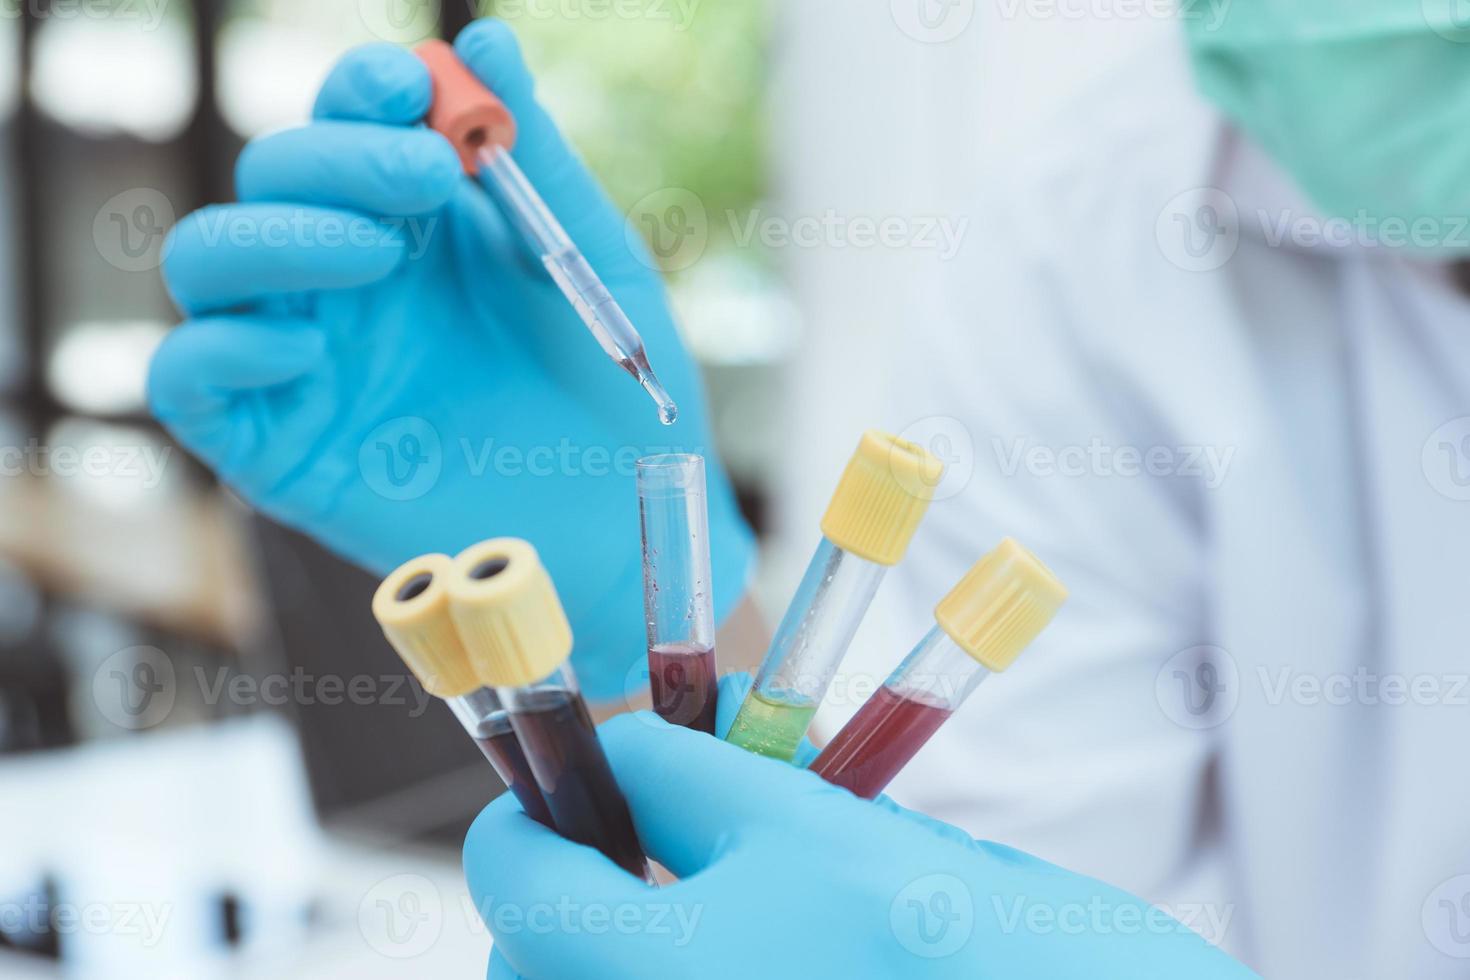 microbiólogo o médico científico que usa ropa de protección contra riesgos biológicos con un tubo de muestra biológica contaminada con coronavirus covid 19 muestra de sangre infectada. foto